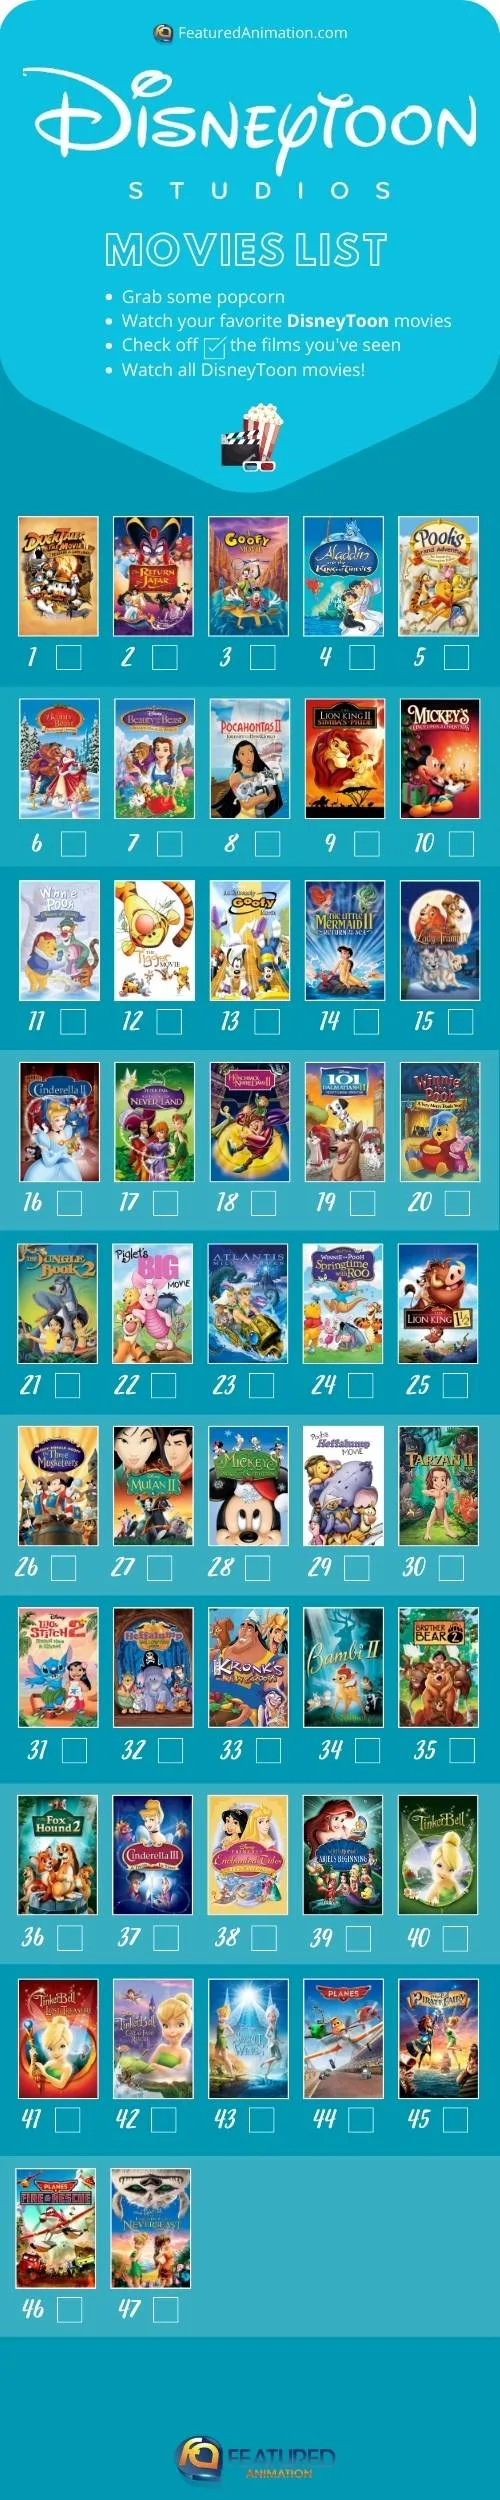 DisneyToon movie checklist by Featured Animation